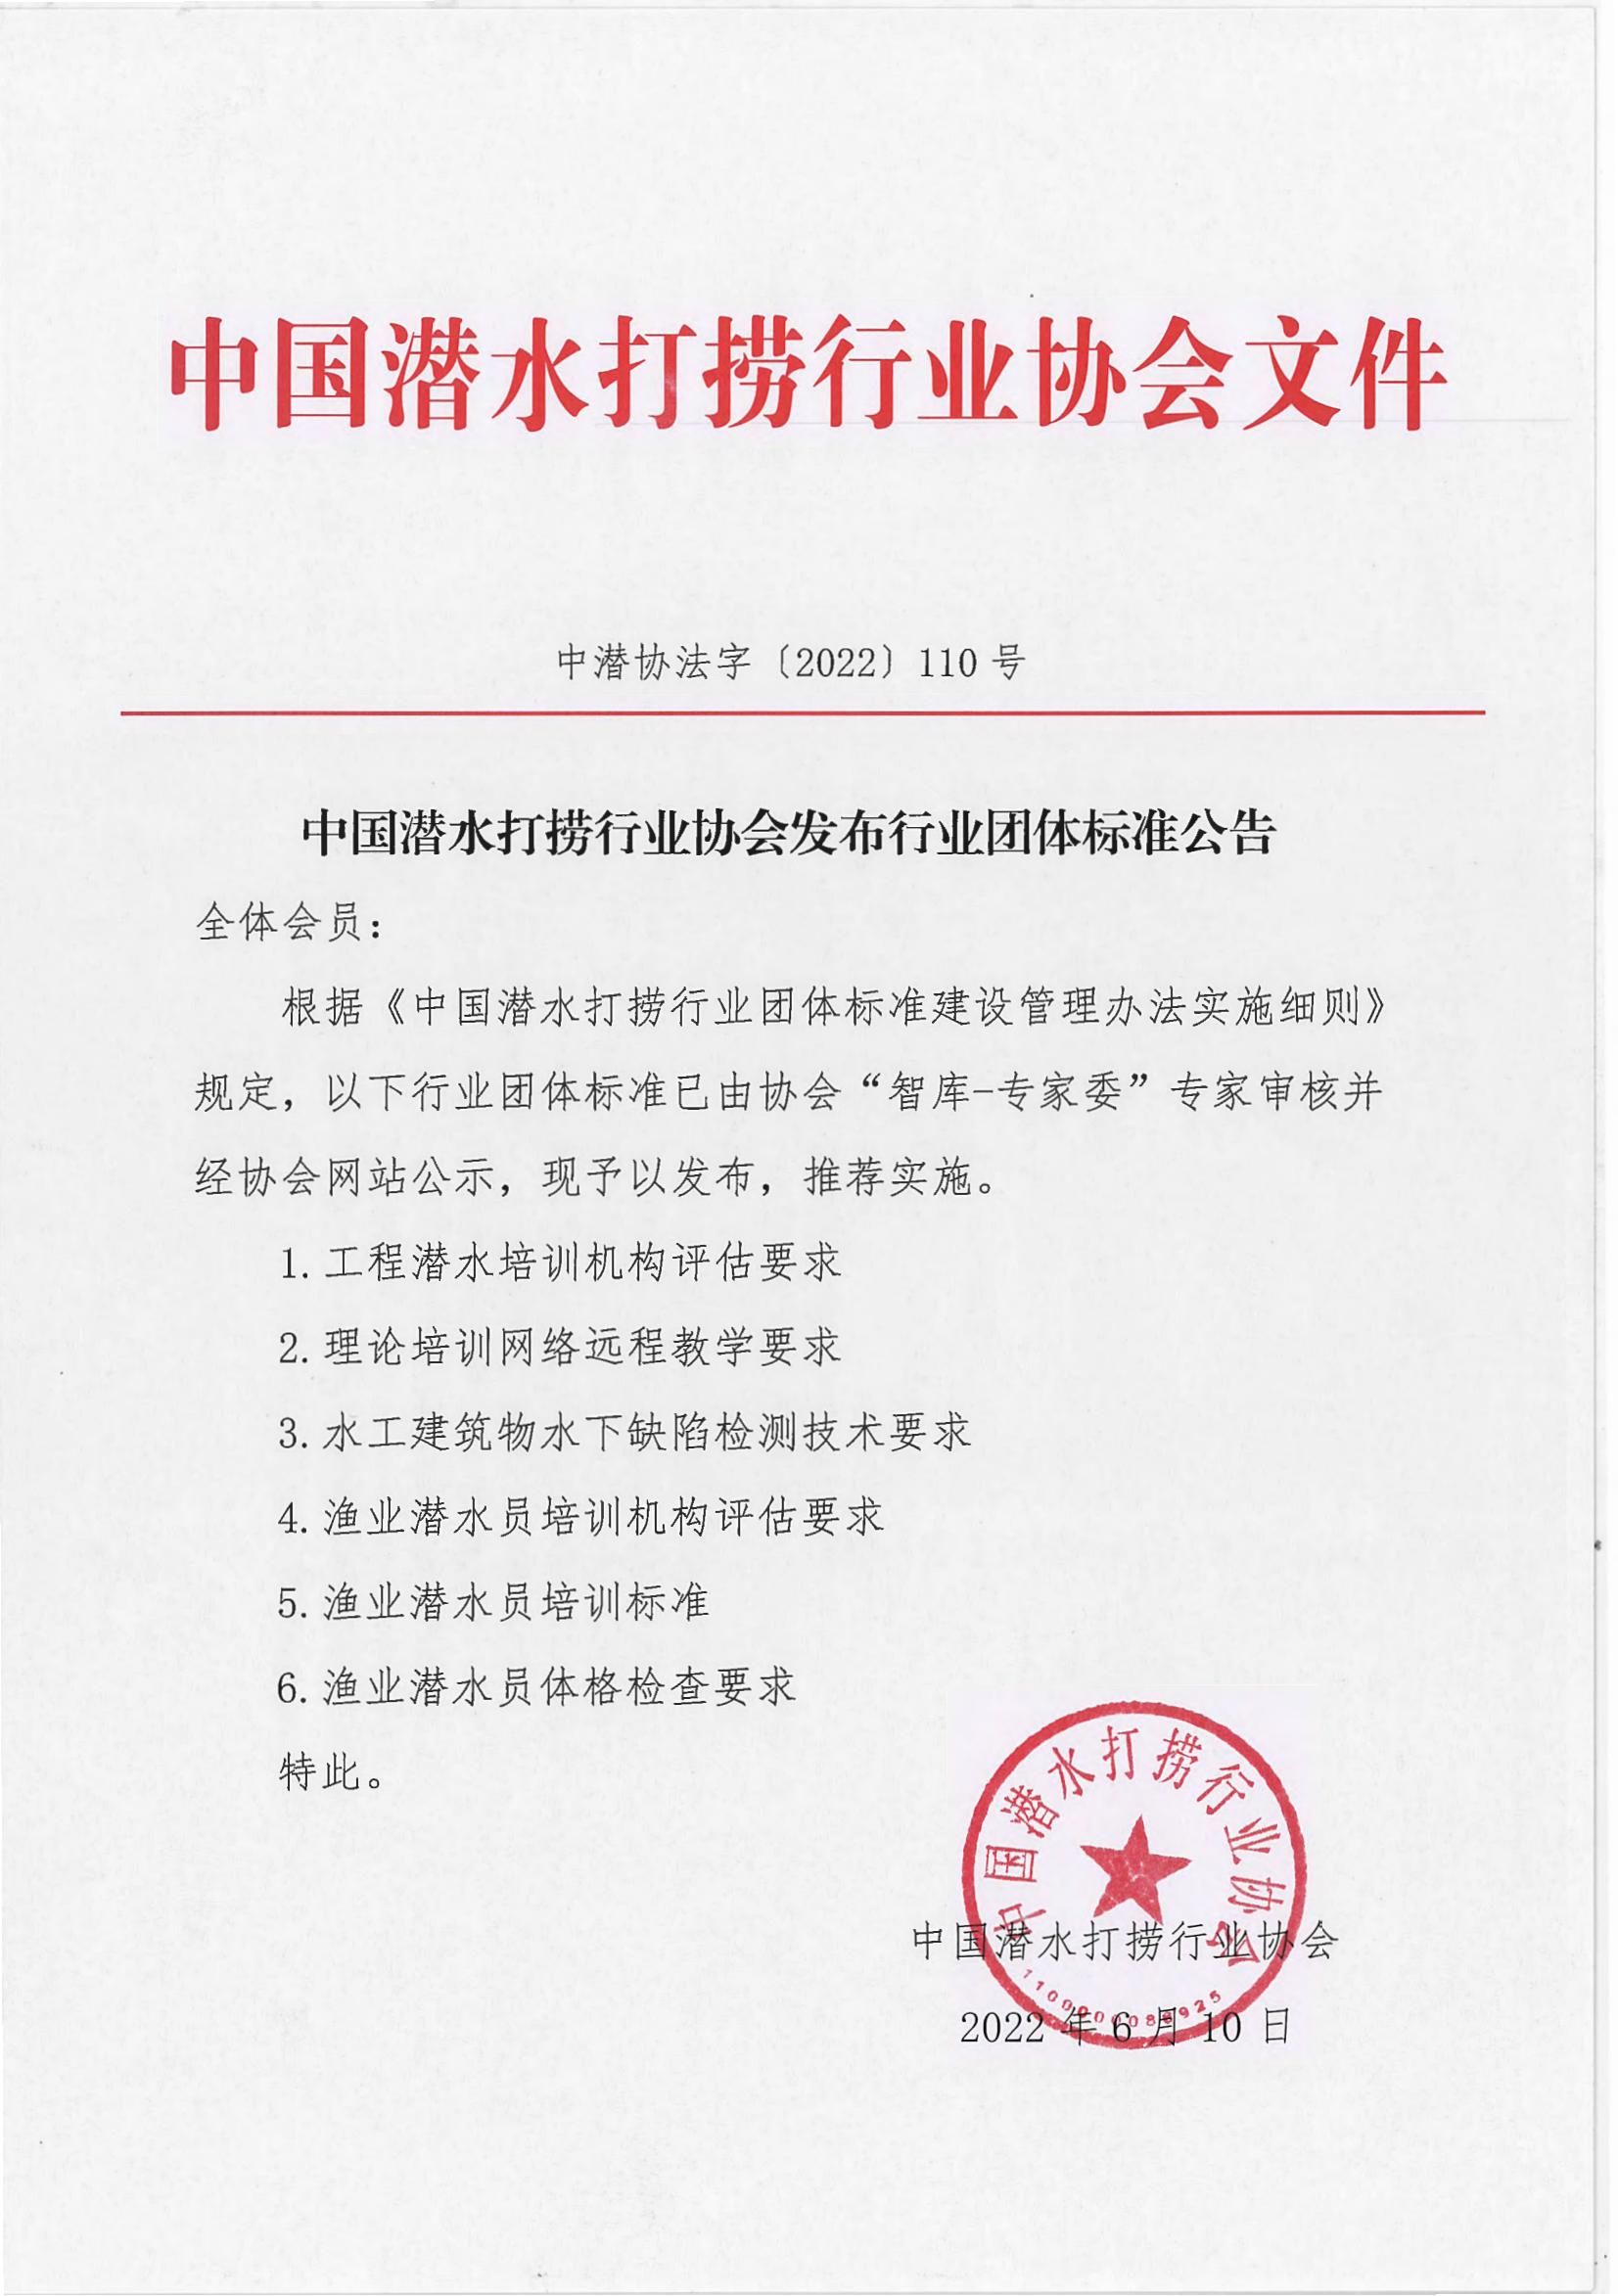 中国潜水打捞行业协会发布团体标准公告_00.jpg